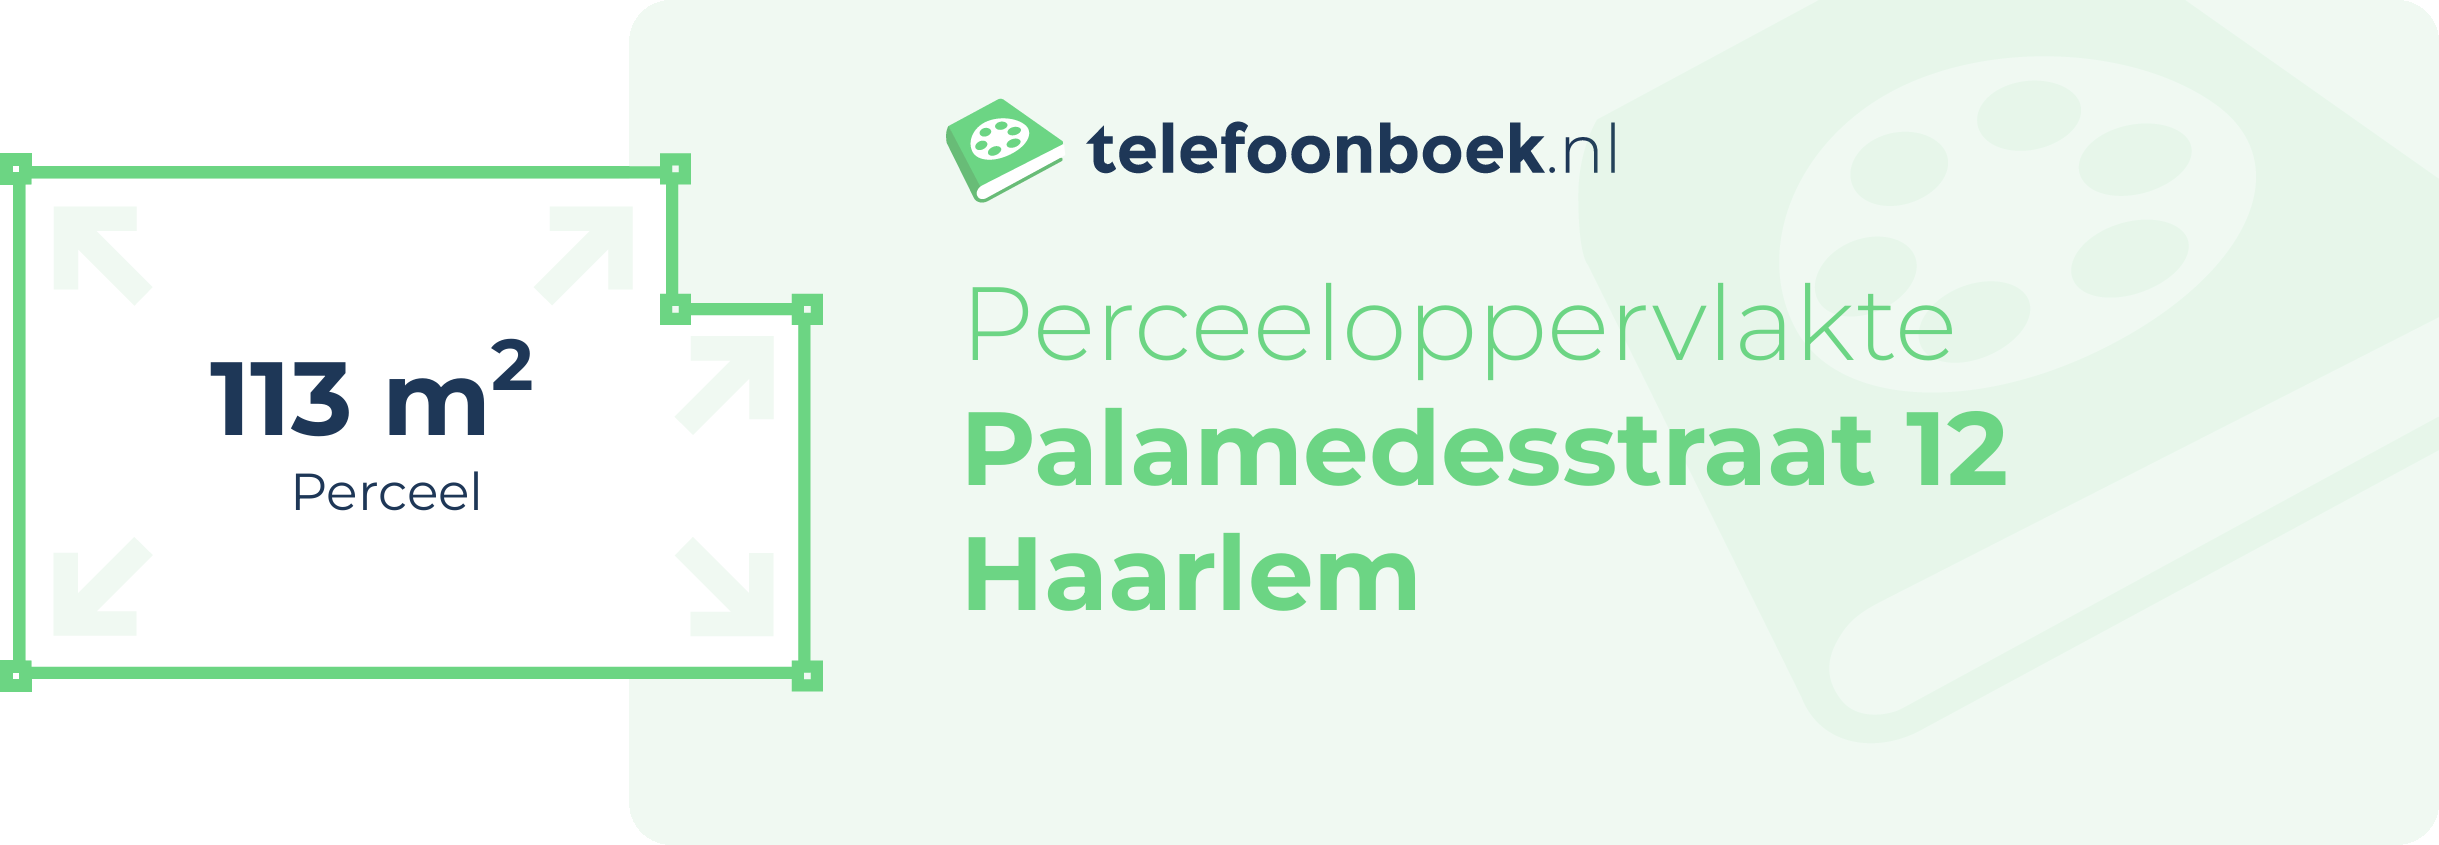 Perceeloppervlakte Palamedesstraat 12 Haarlem